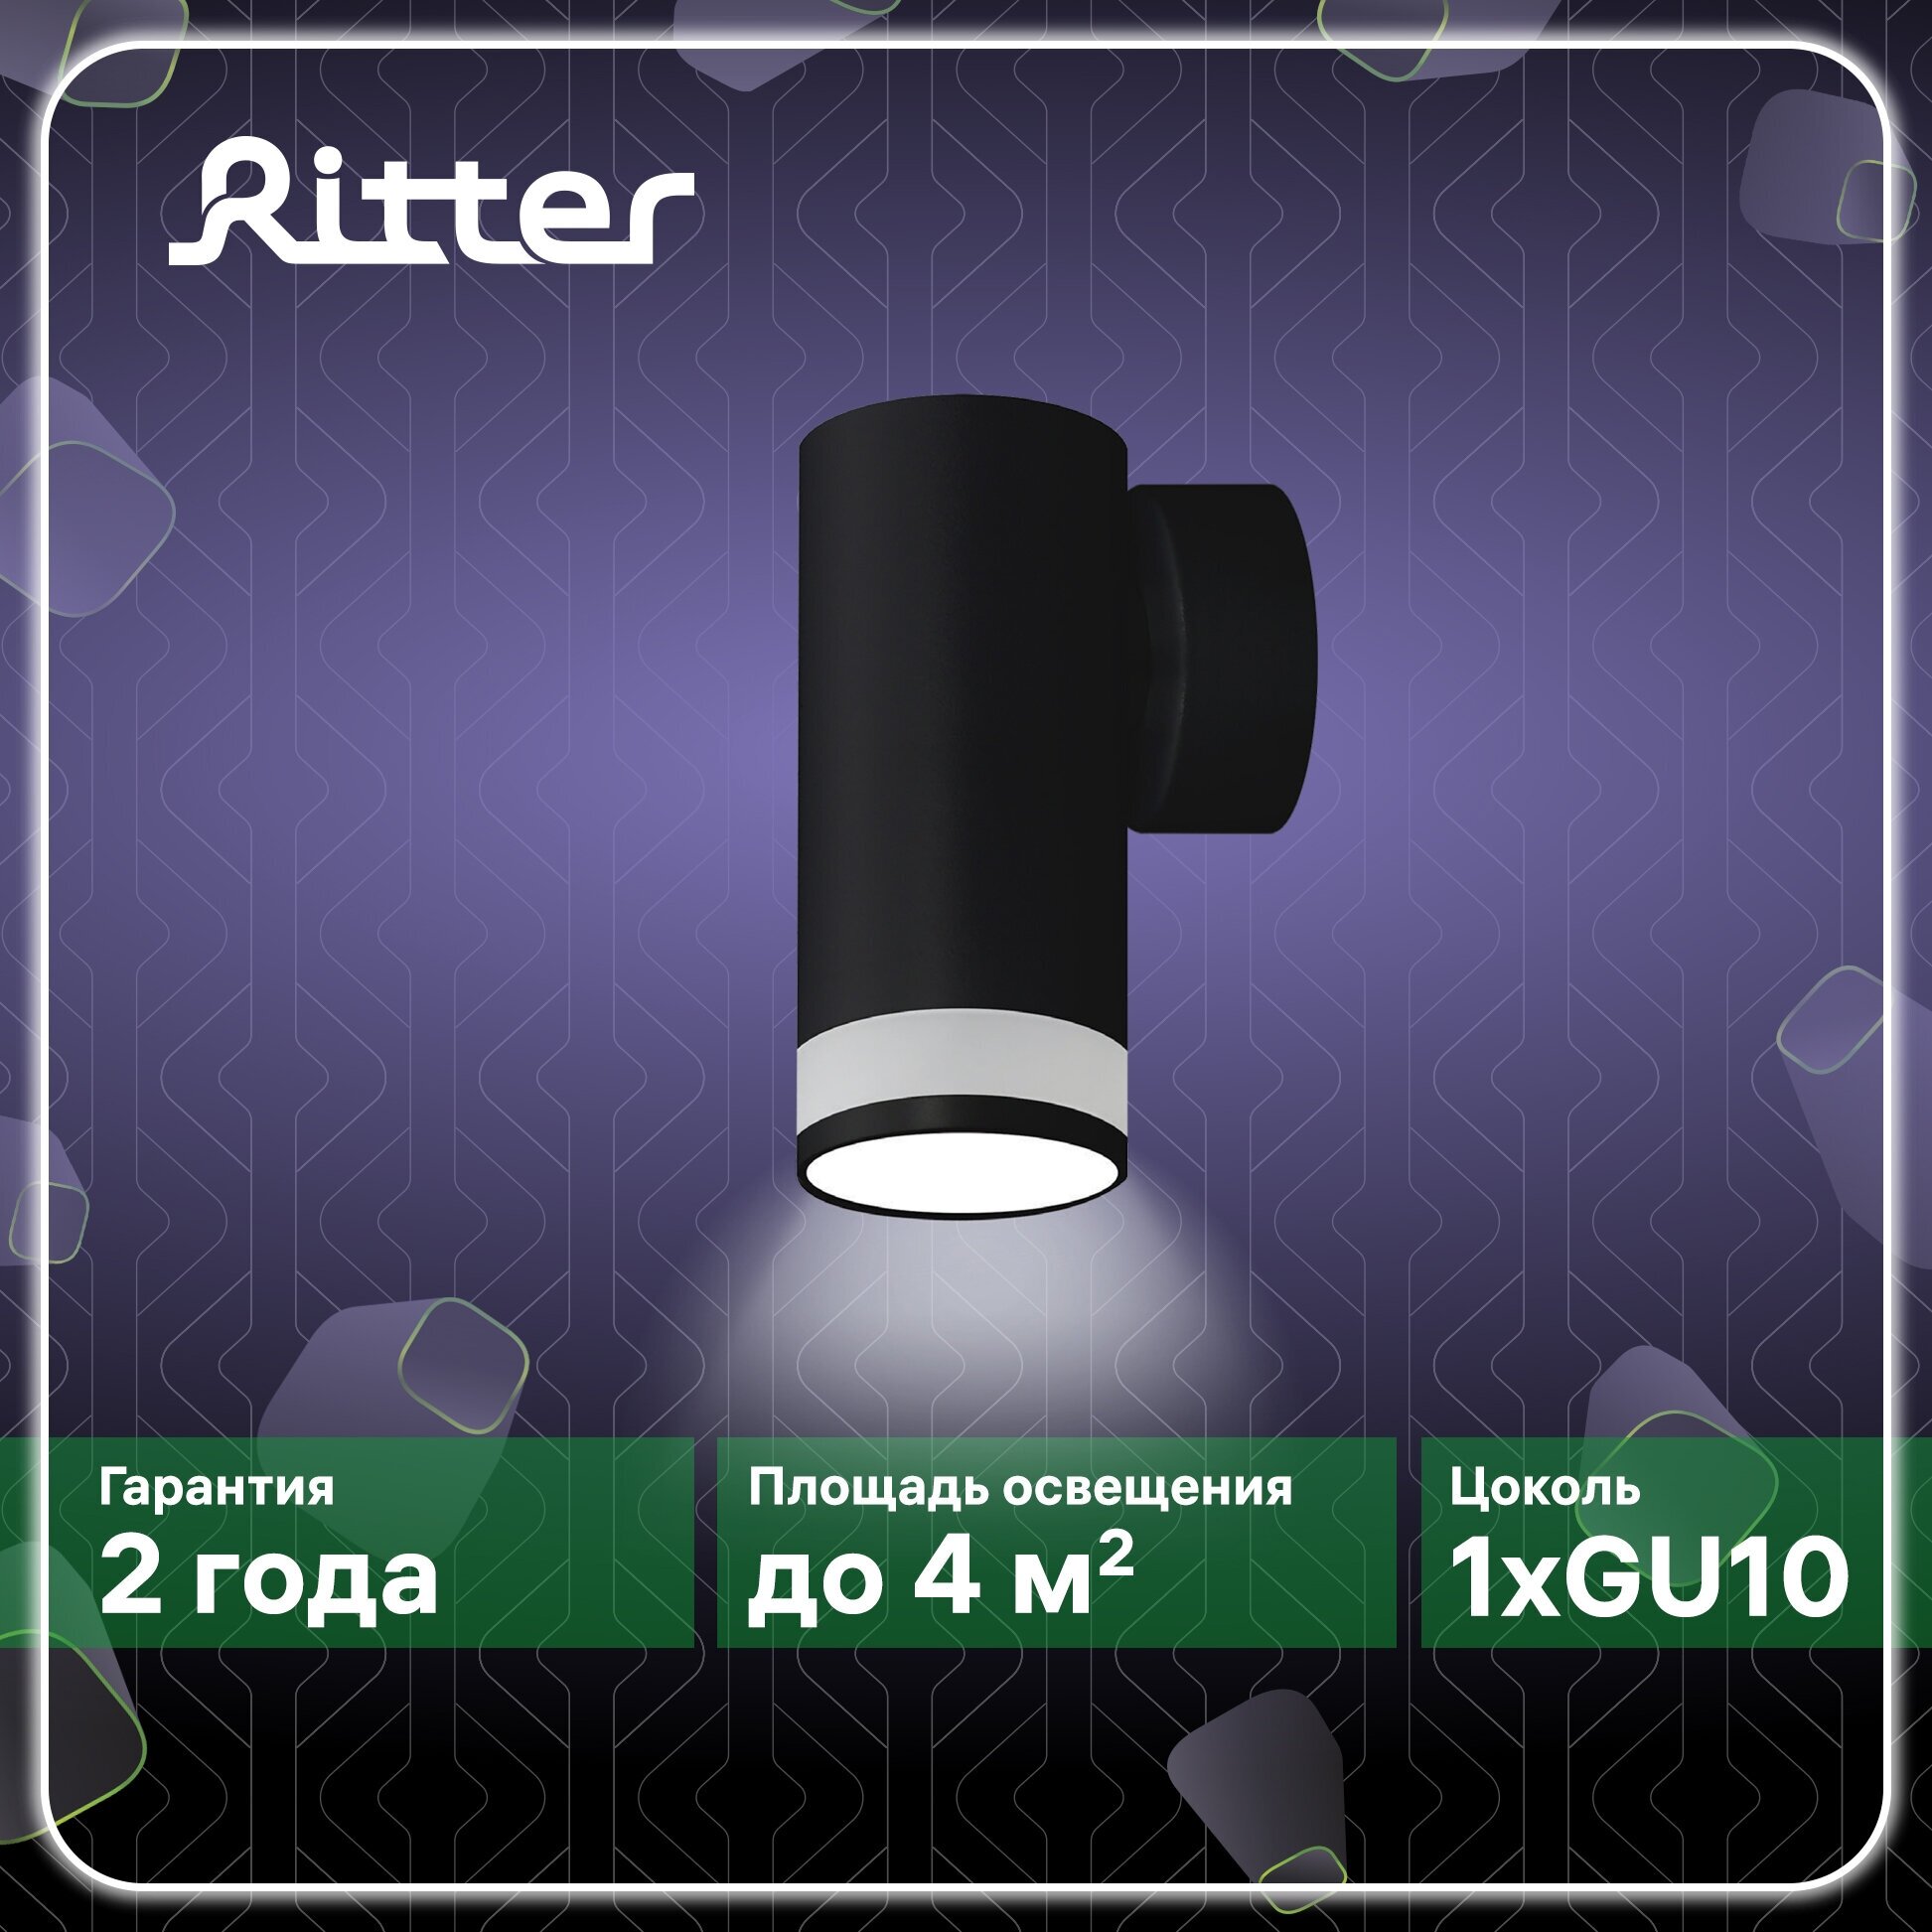 Светильник настенно-потолочный накладной Arton, цилиндр, 55х110х85мм, GU10, алюминий/стекло, черный, спот, бра, на стену, на потолок, Ritter, 59955 5